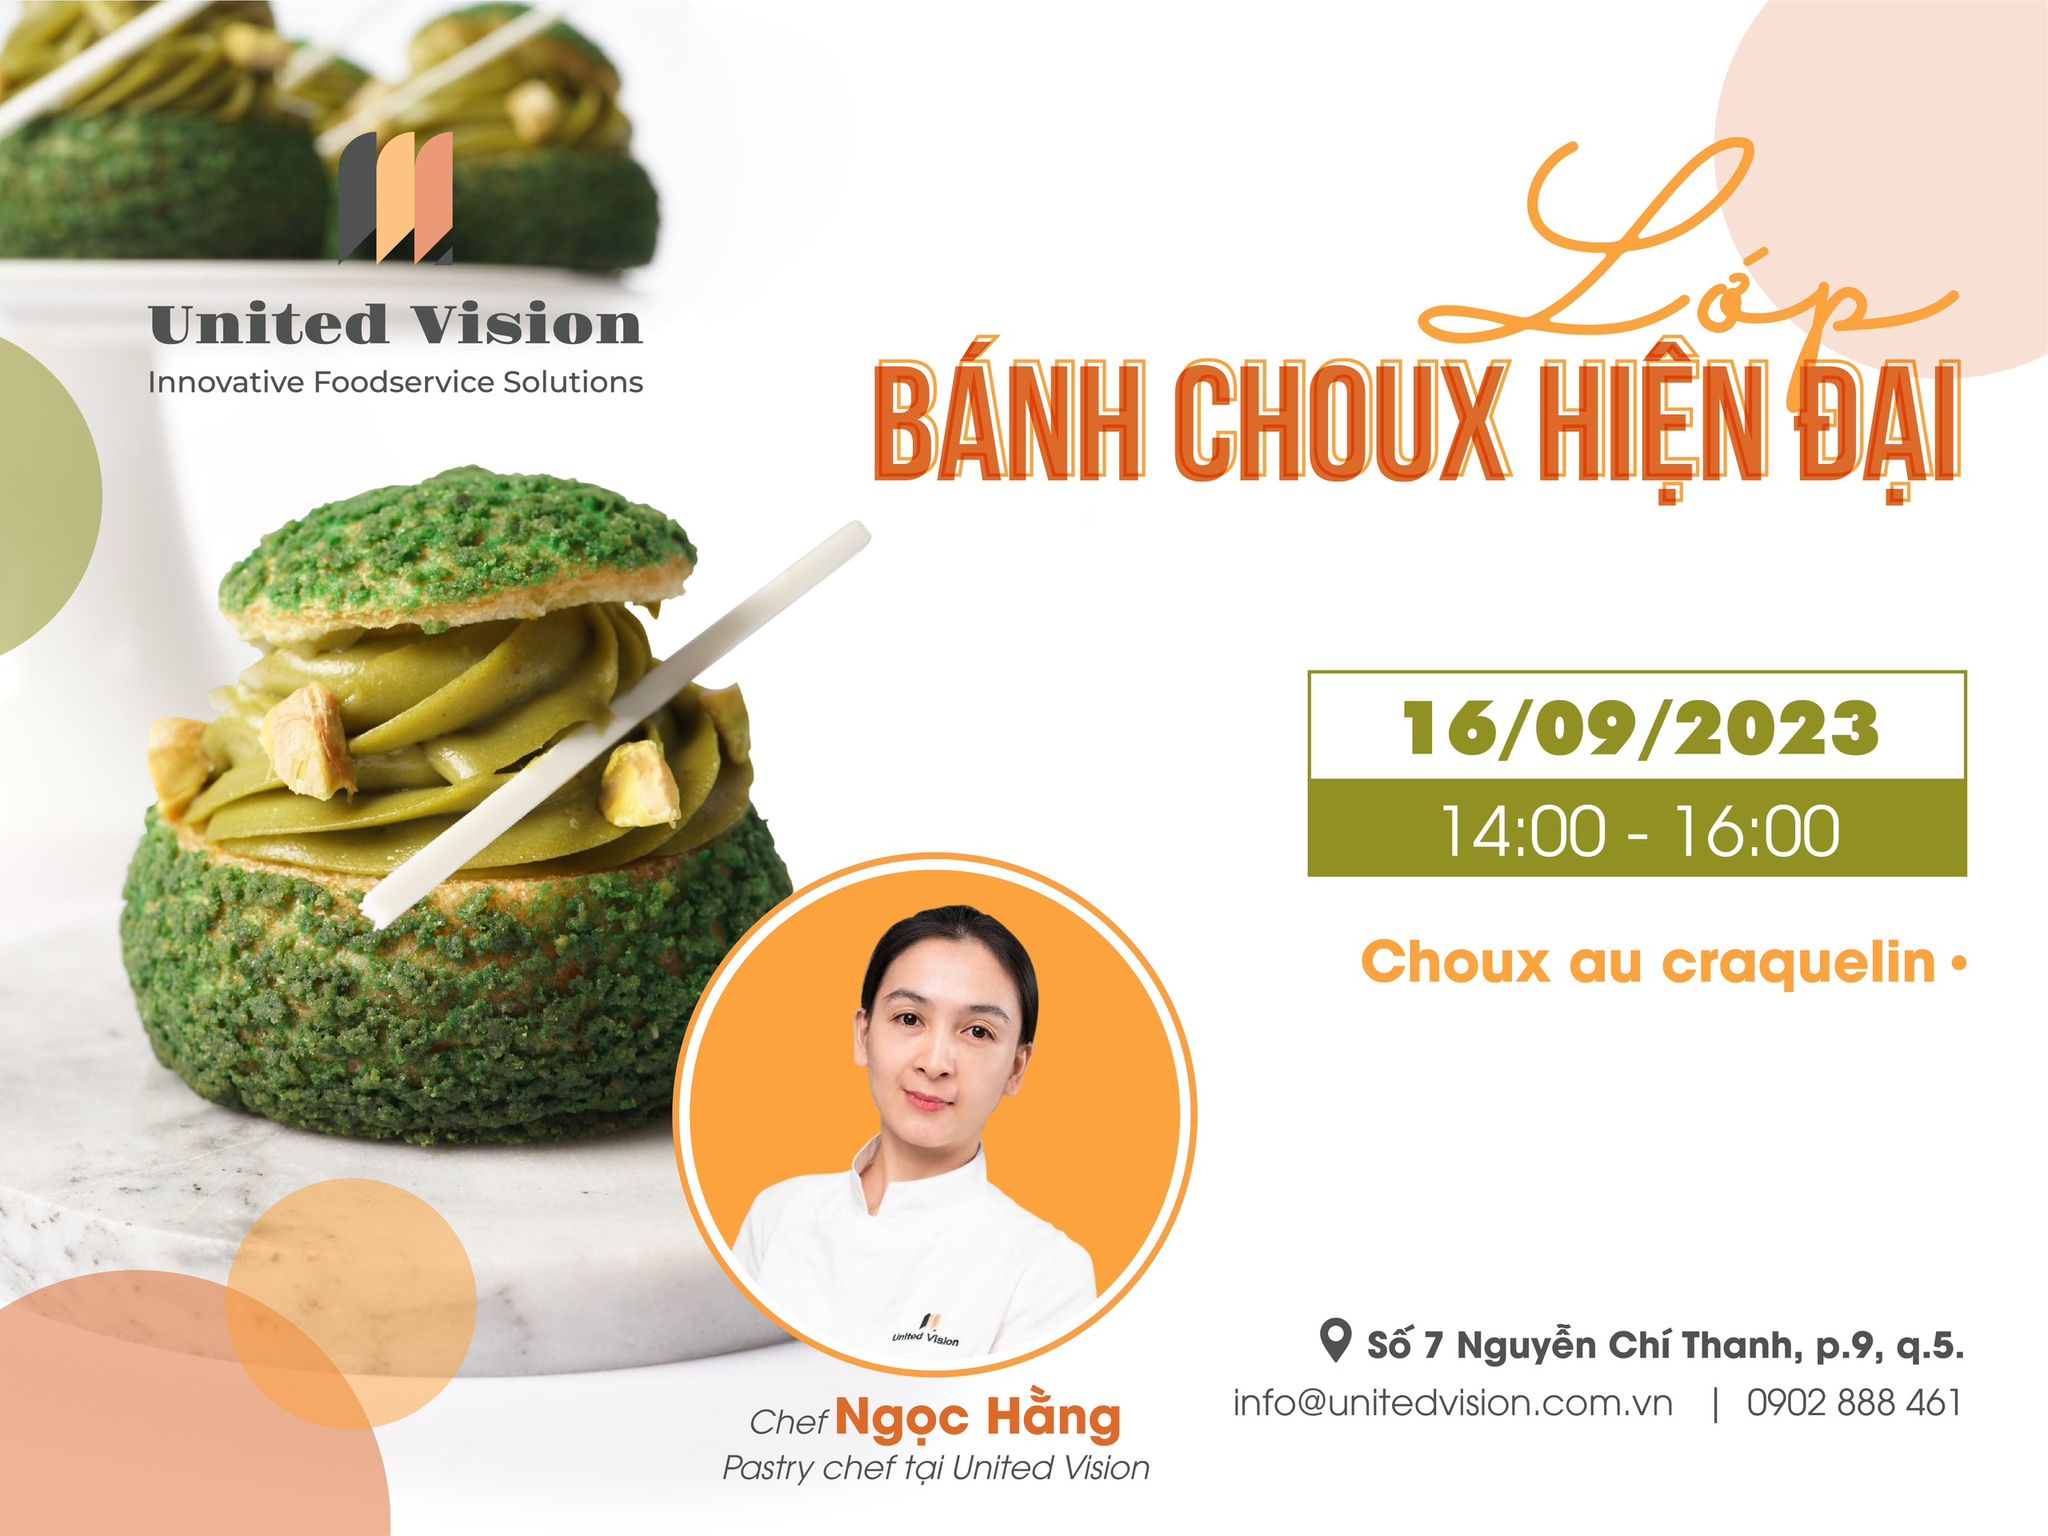 Modern Choux Class - Tham gia cùng United Vision trong lớp học bánh Choux hiện đại